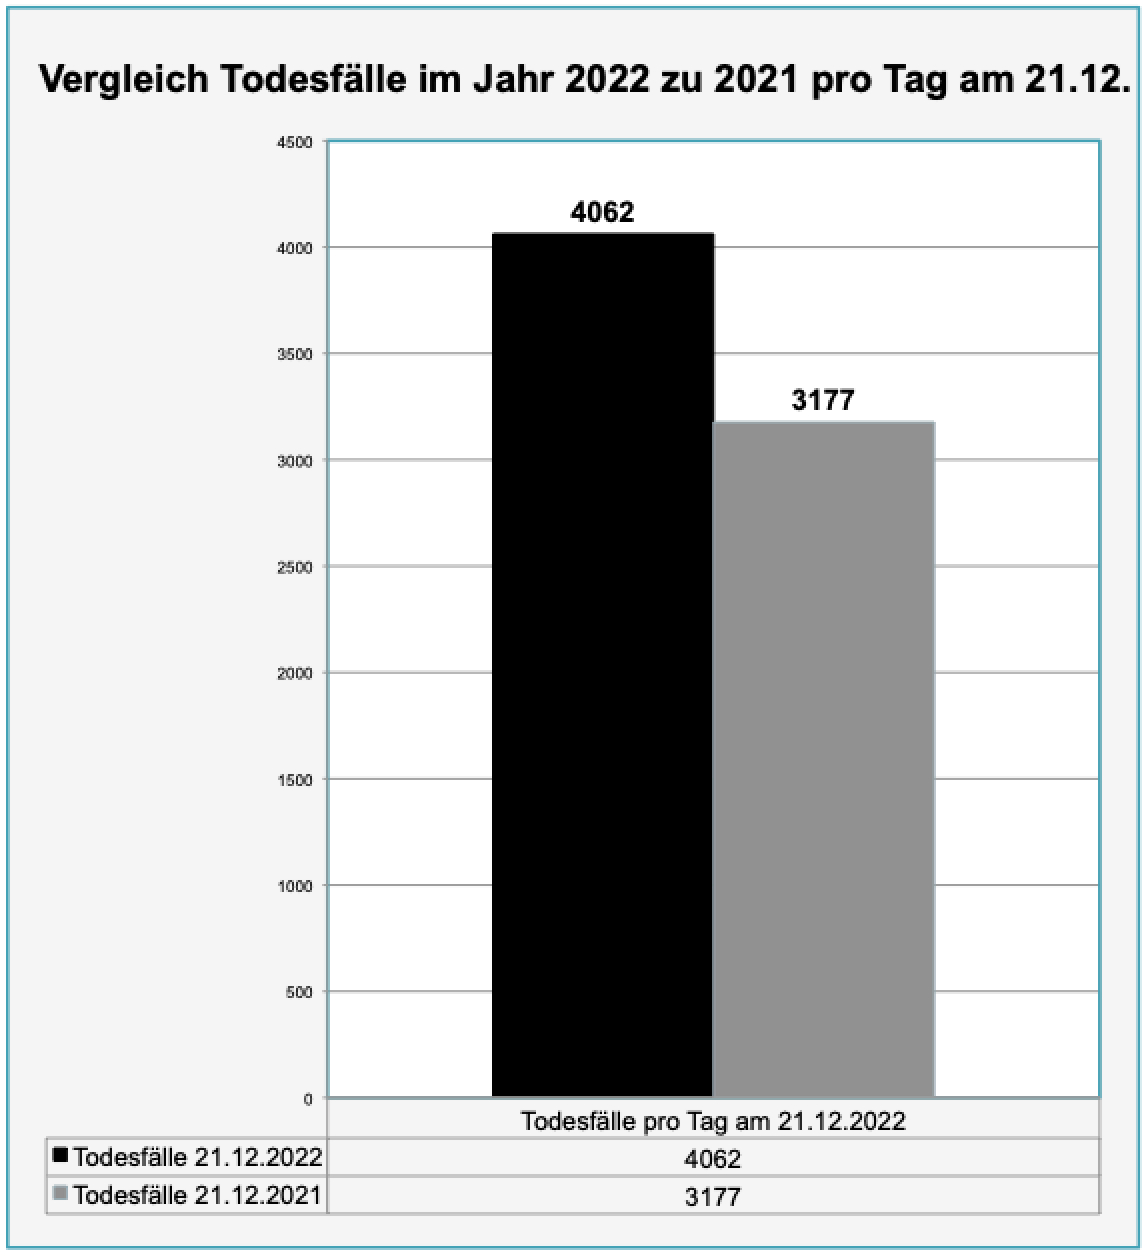 Vergleich Todesfälle im Jahr 2022 zu 2021 pro Tag am 21.12. nach Anzahl